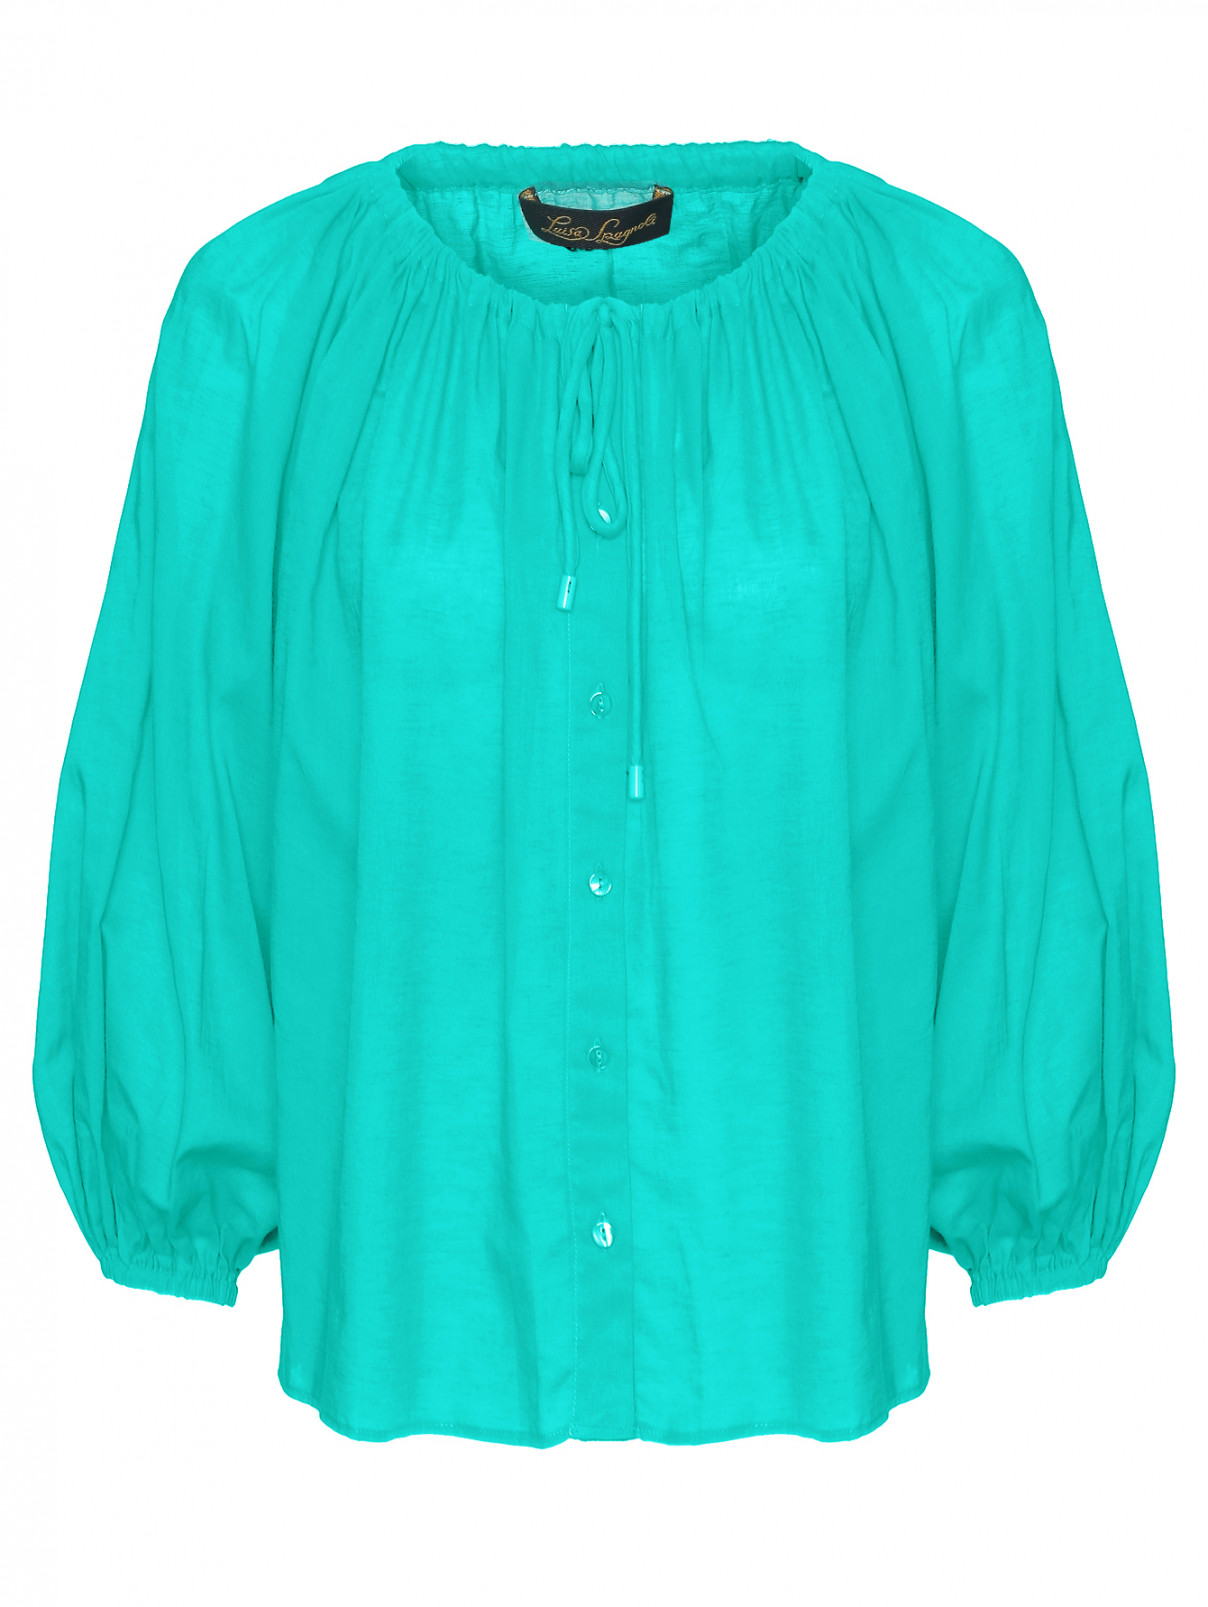 Блуза из хлопка и льна универсального размера Luisa Spagnoli  –  Общий вид  – Цвет:  Зеленый